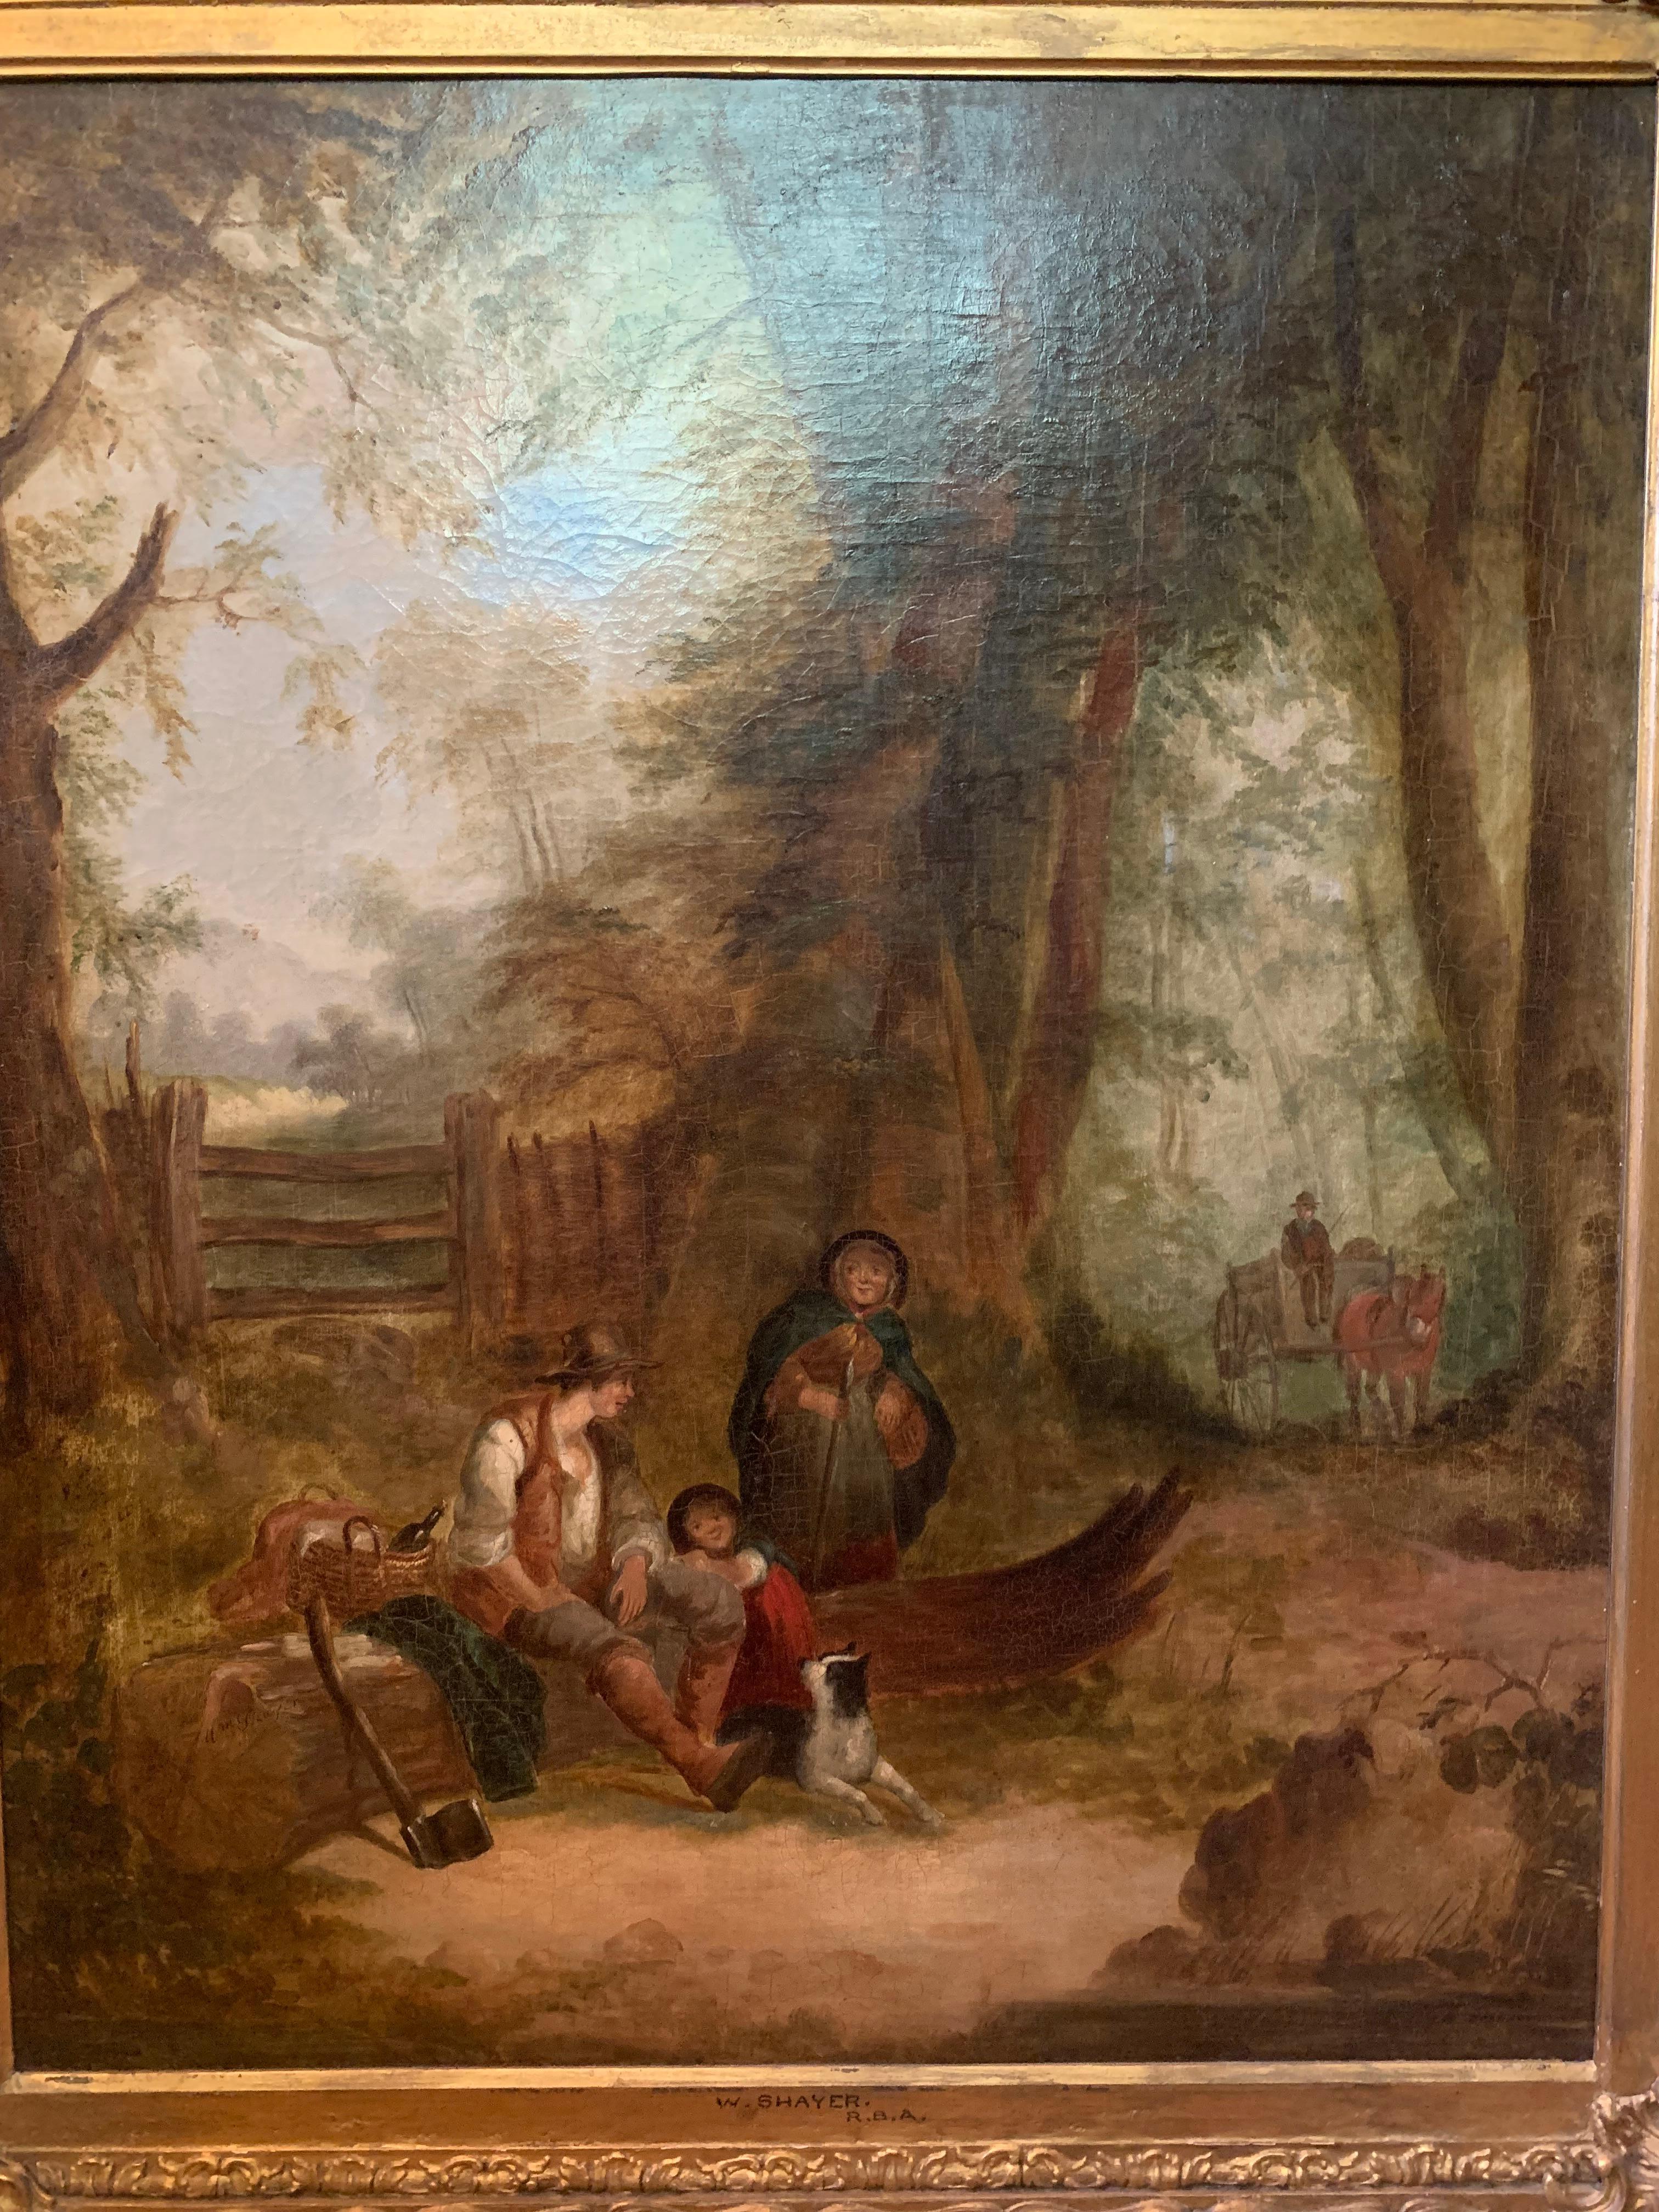 Gemalt und signiert von William Shayer, Senior (1787-1879), der eine lange und erfolgreiche Karriere als Maler englischer Landschaften und Seestücke hatte und in den führenden Kunstinstitutionen seiner Zeit ausstellte, darunter die Royal Academy und